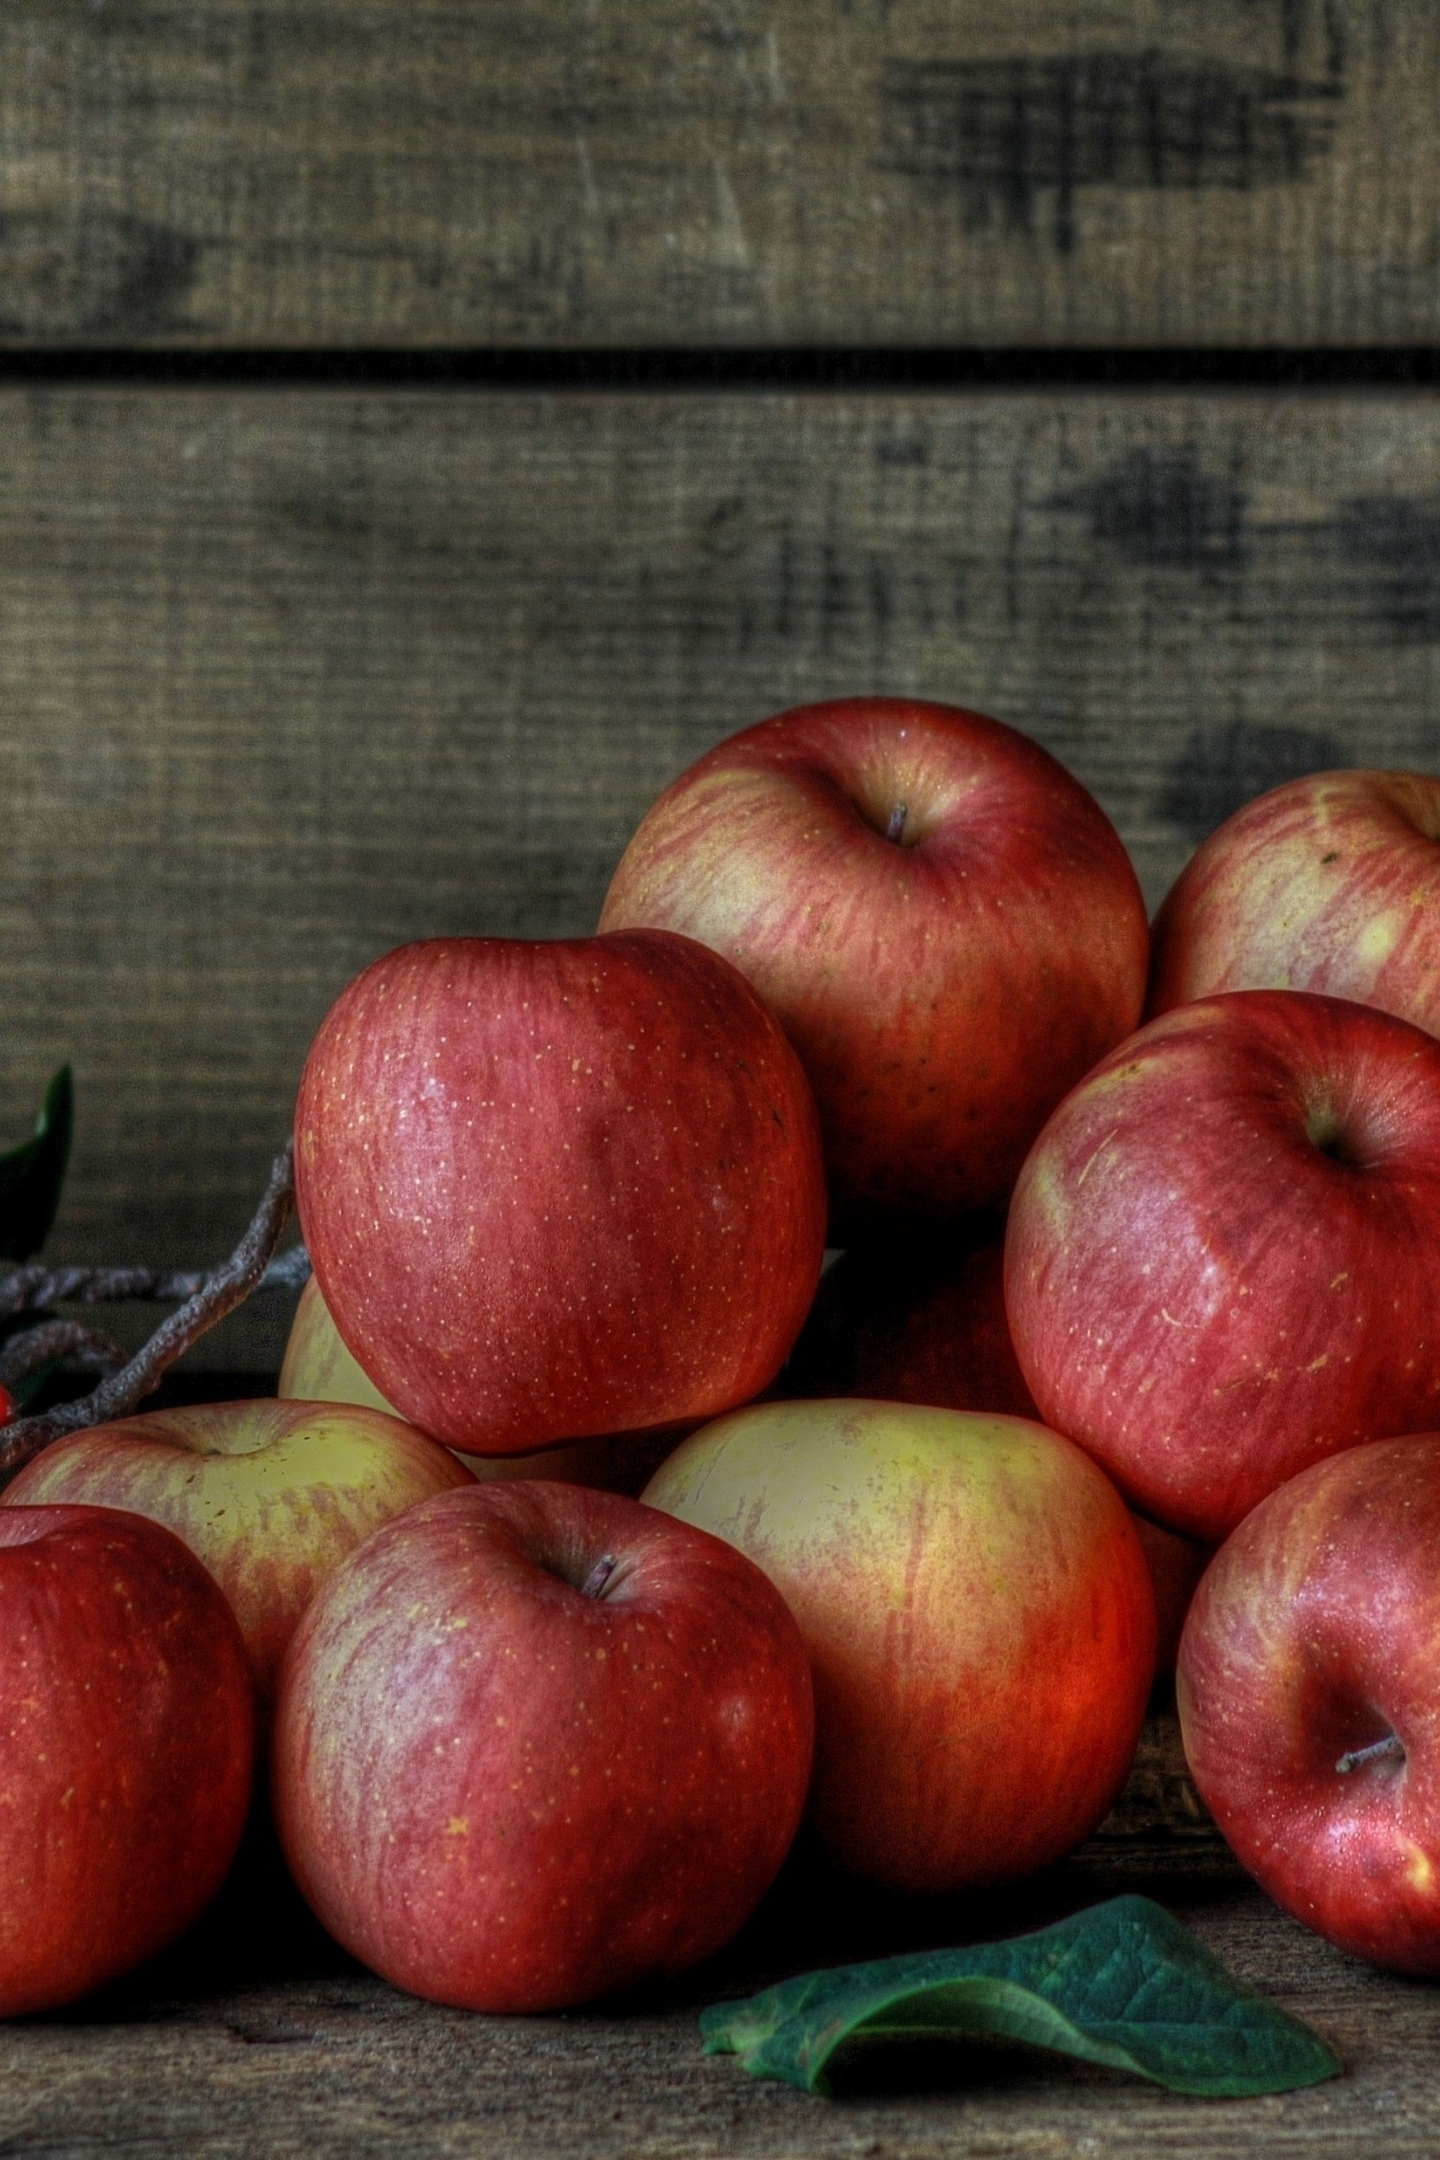 Картинка: Яблоки, красные, спелые, урожай